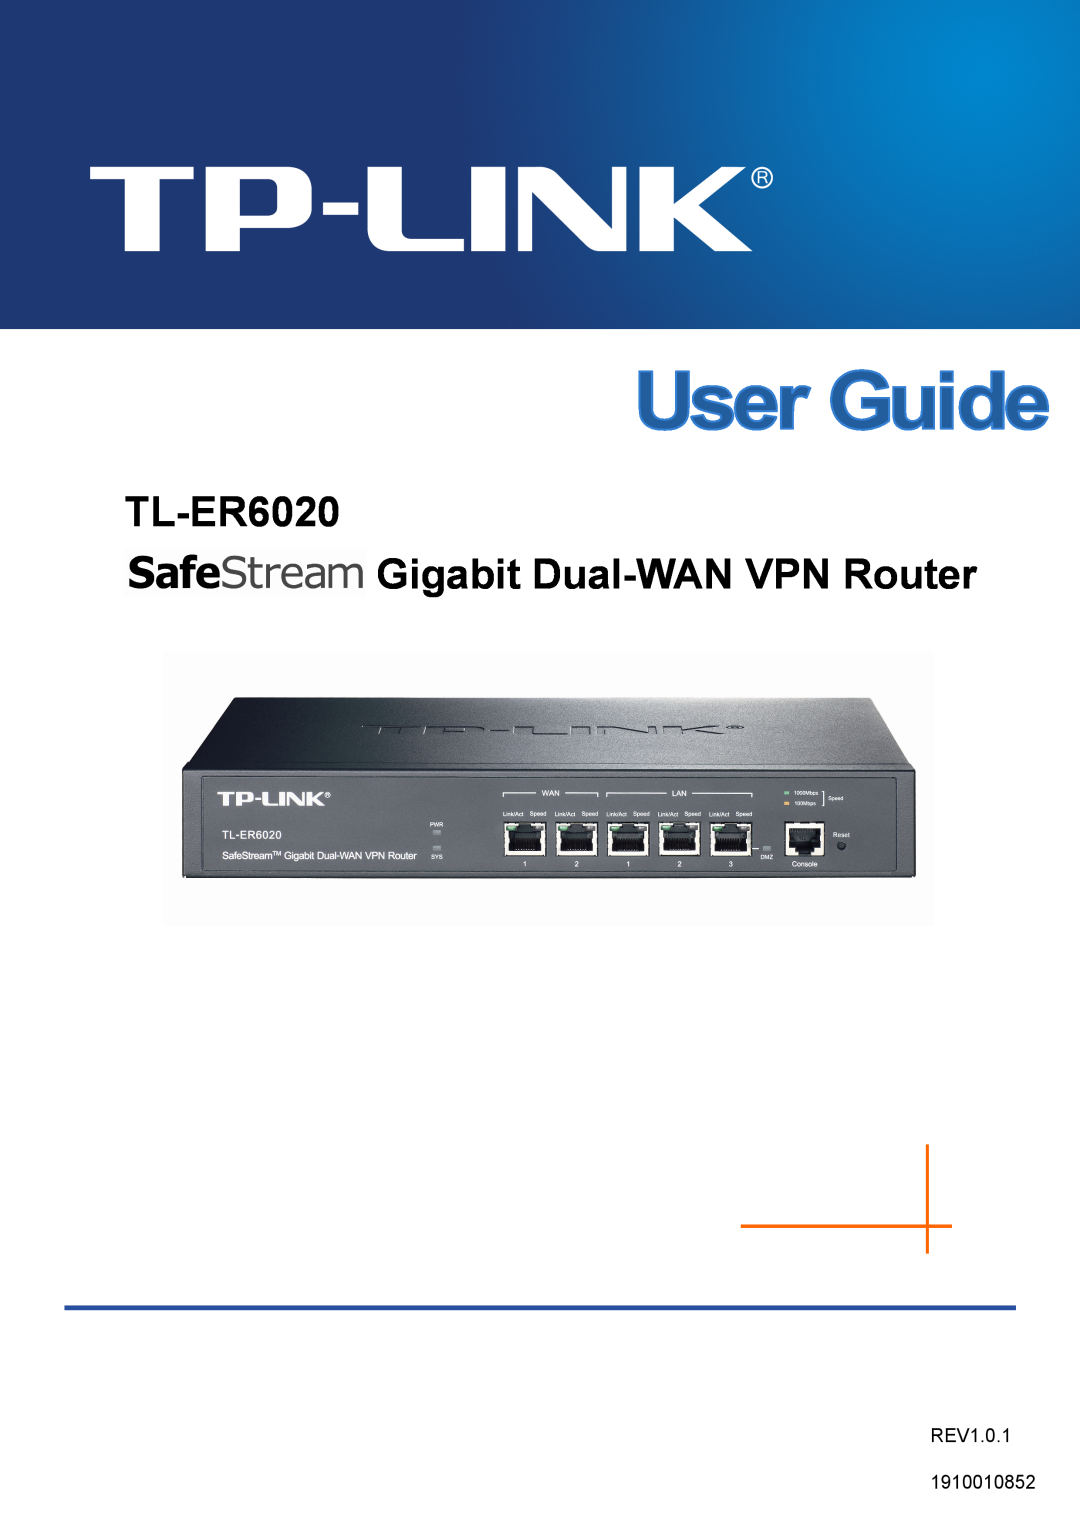 TP-Link manual TL-ER6020 Gigabit Dual-WAN VPN Router, REV1.0.1 1910010852 